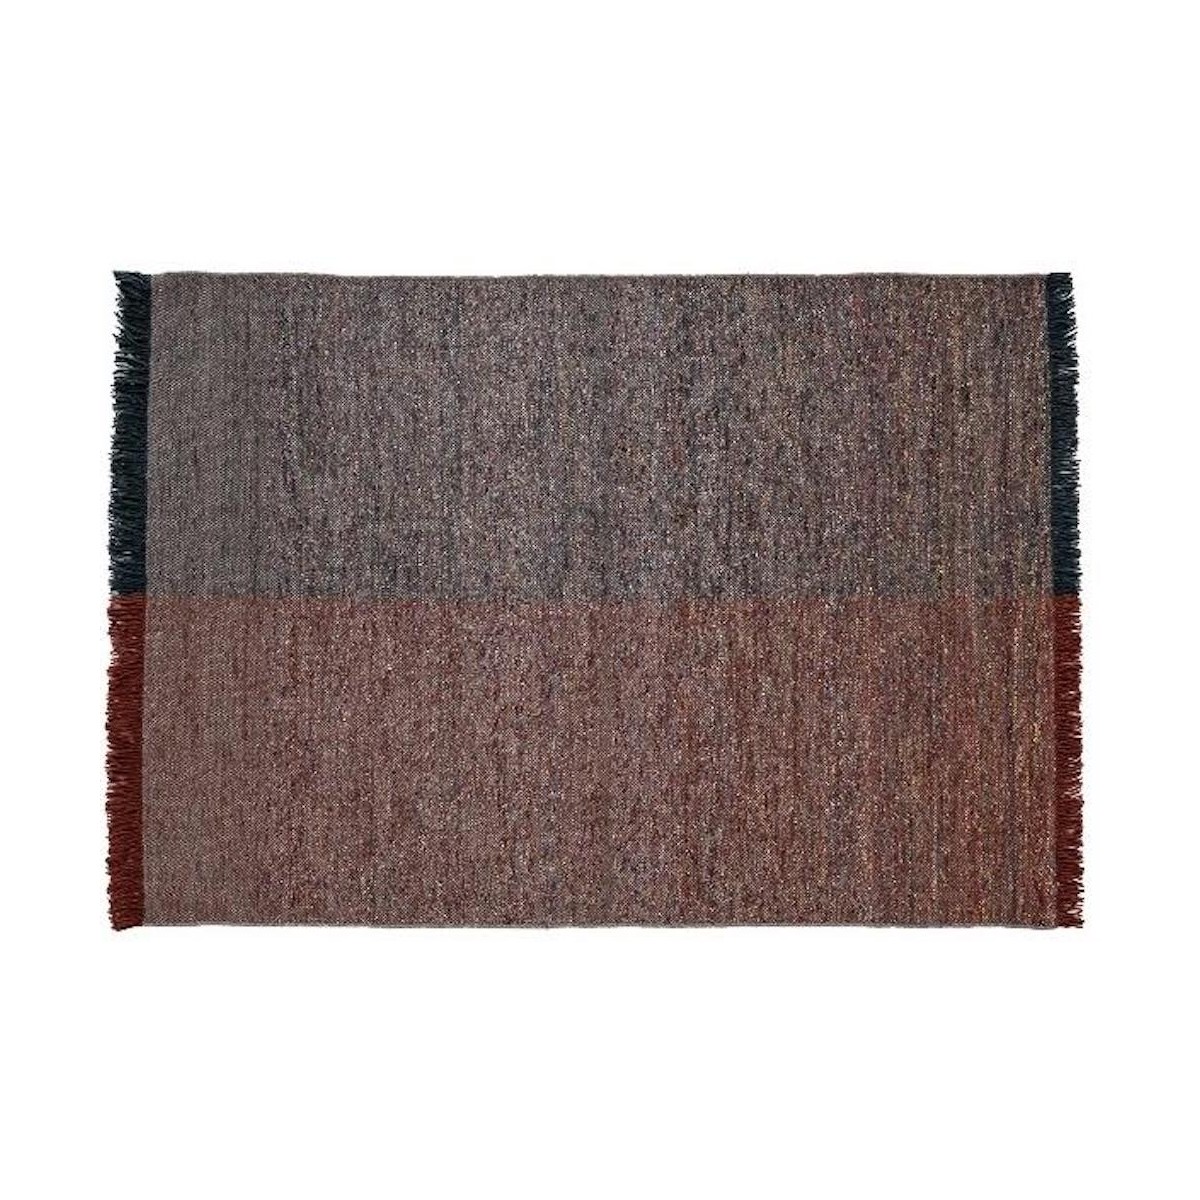 170x240cm - tapis Re-rug 1